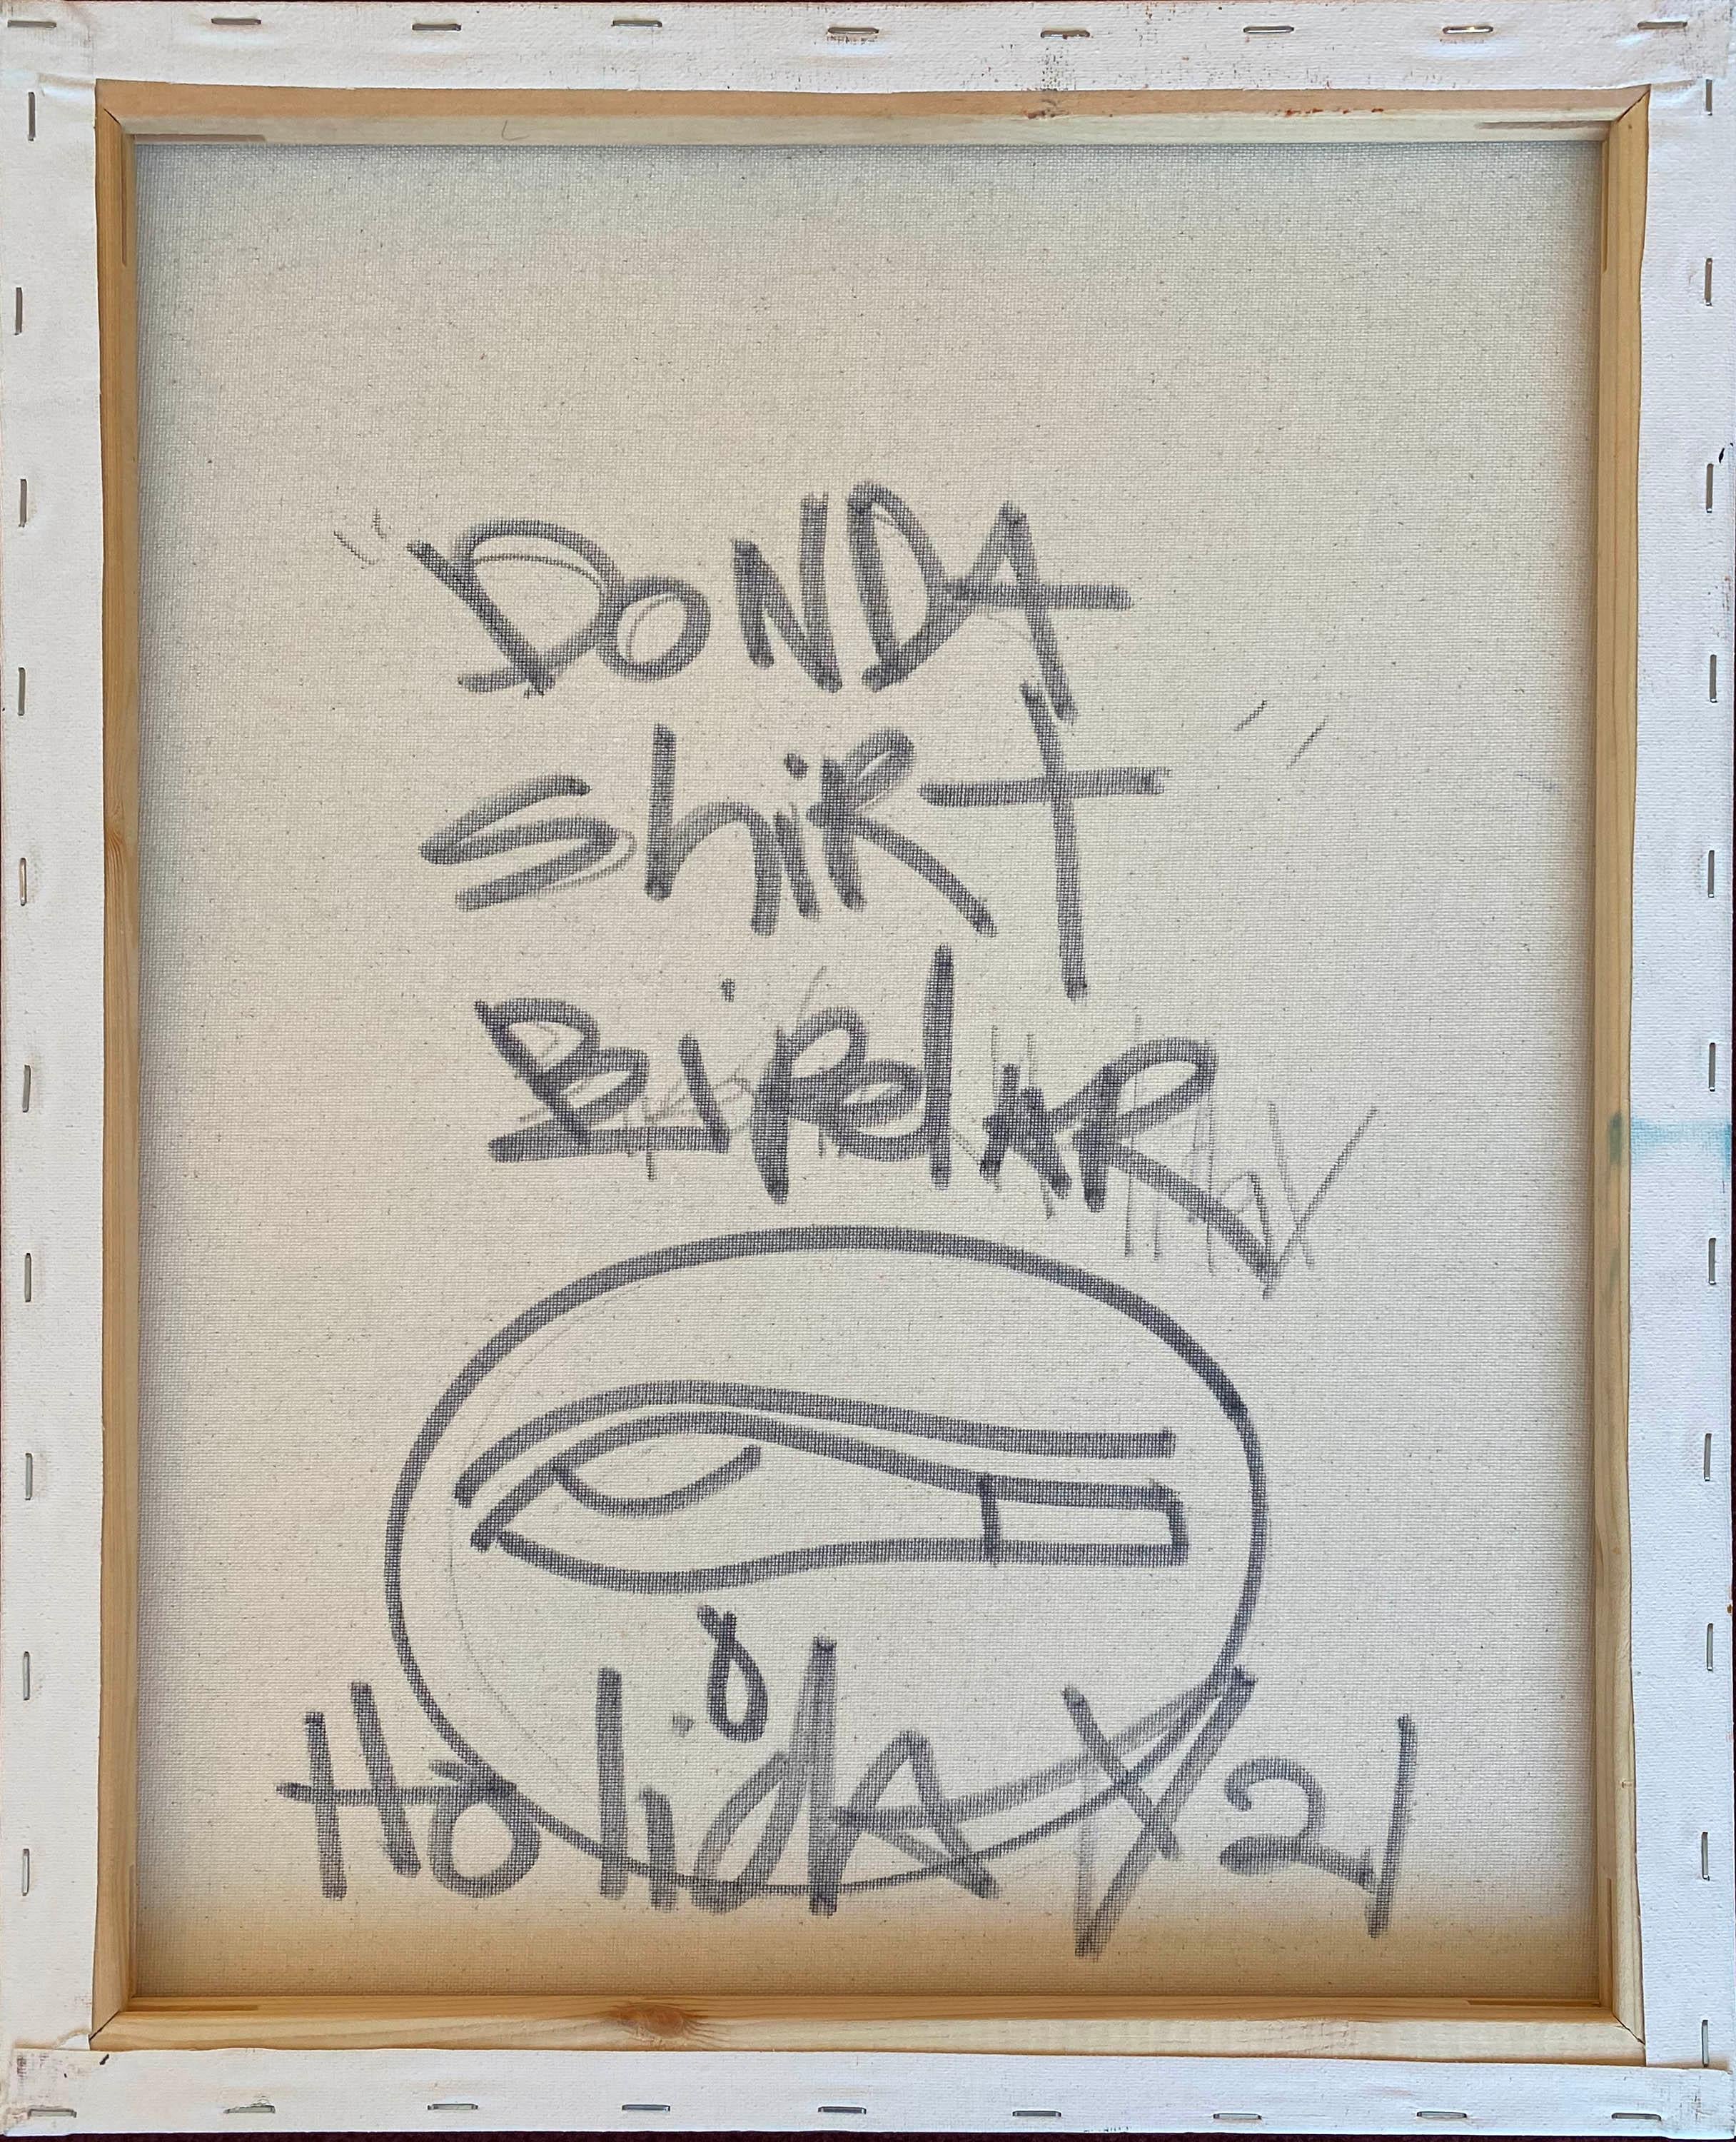 DONDA Shirt - Painting by Bipolar Holiday